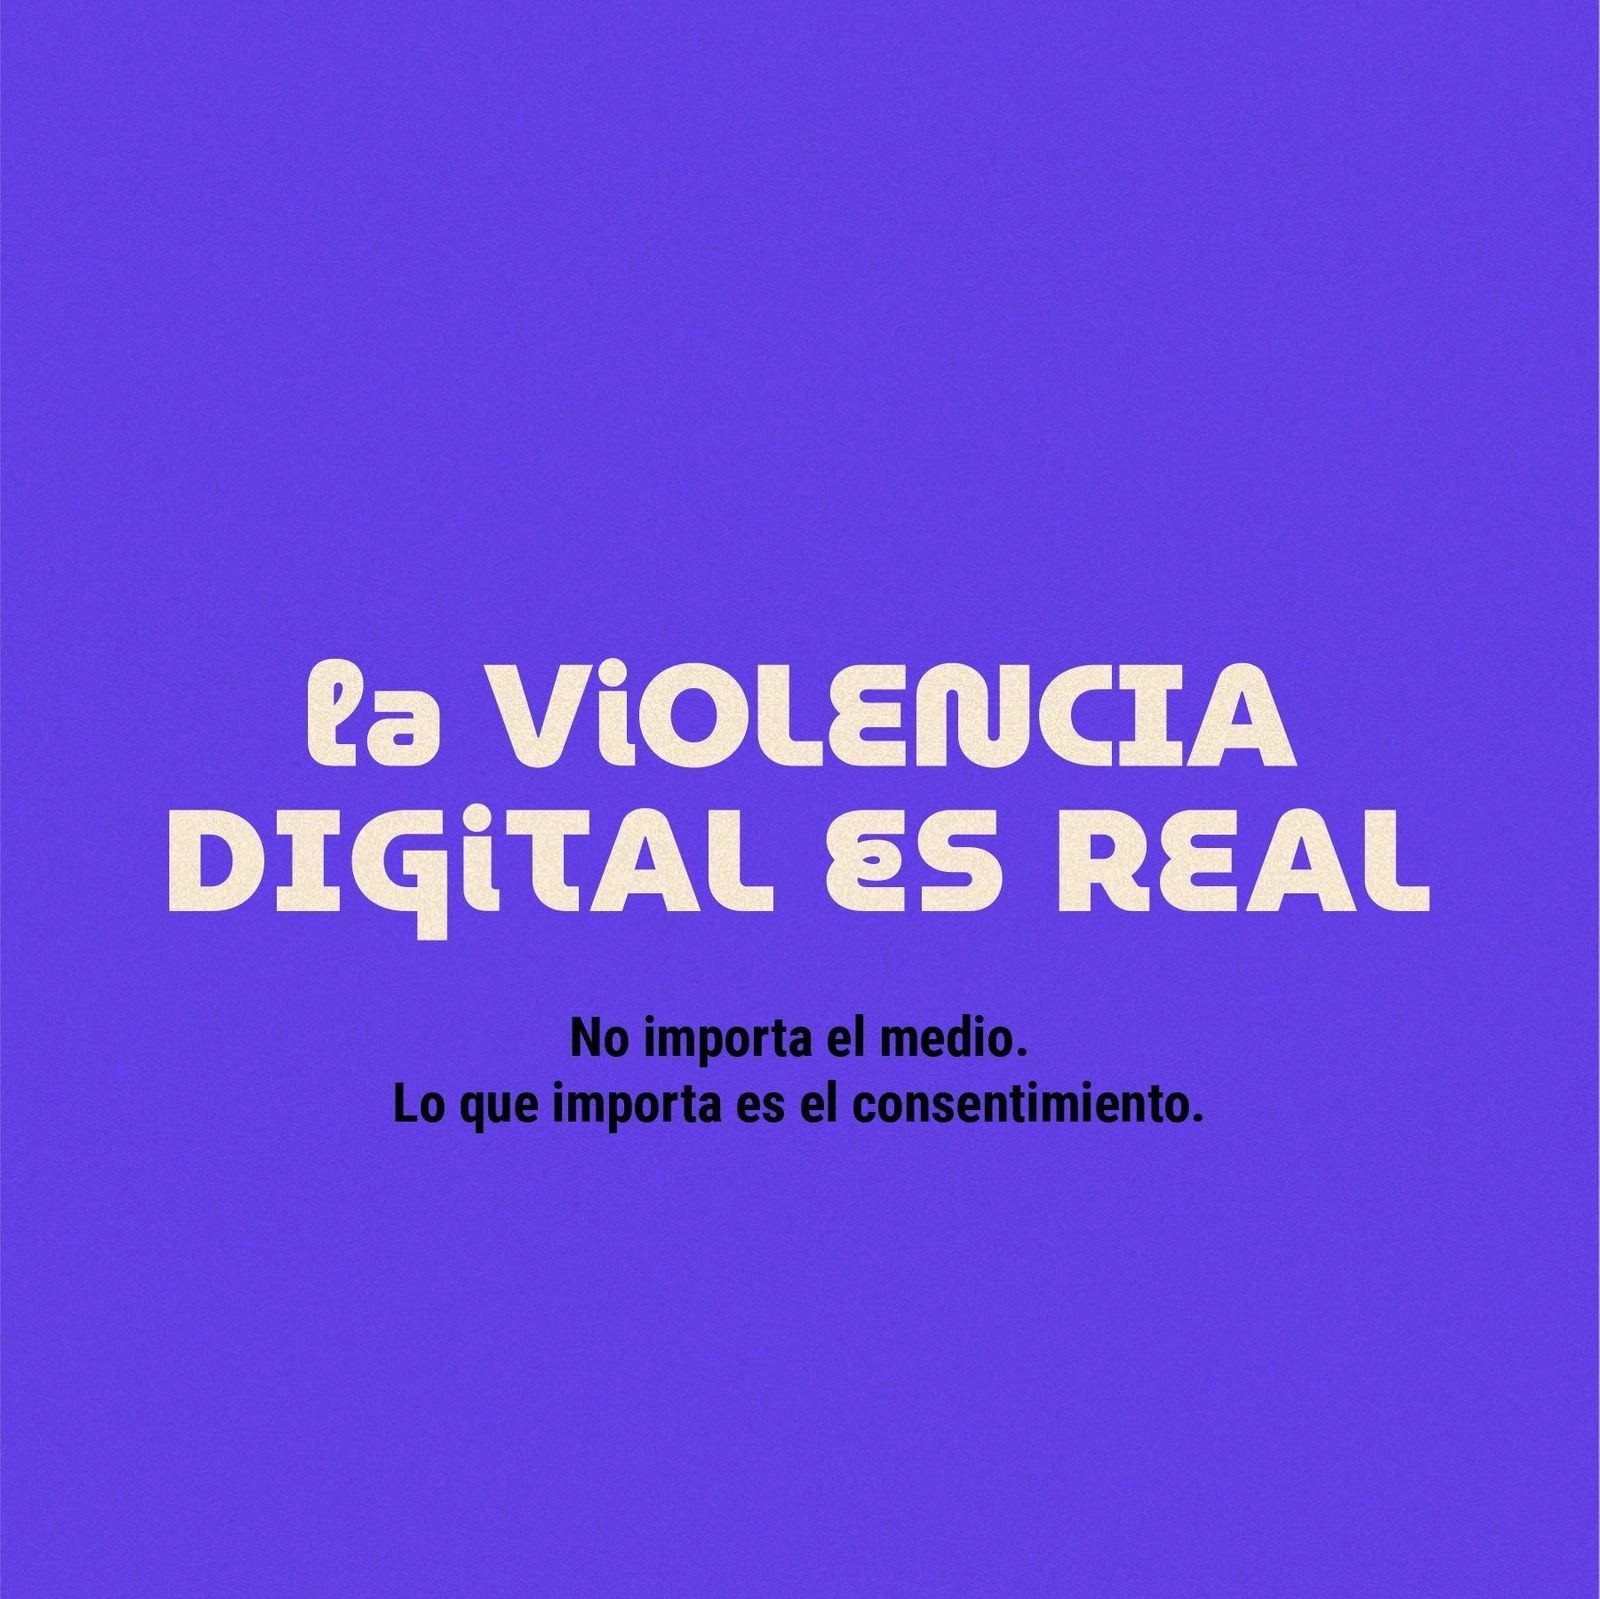 La violencia digital es violencia